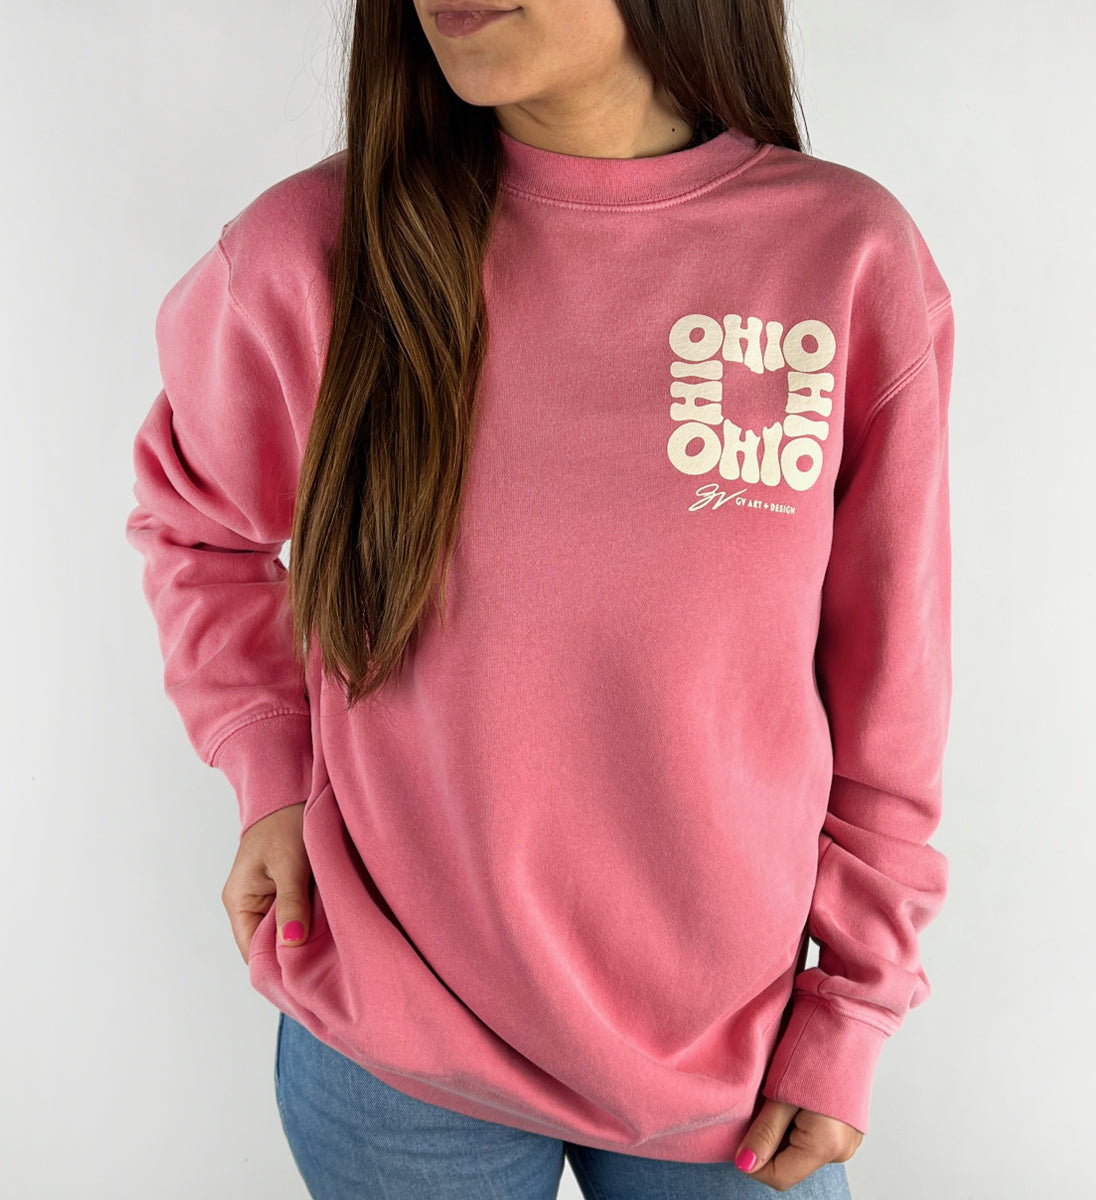 All In Ohio Pink Crew Sweatshirt